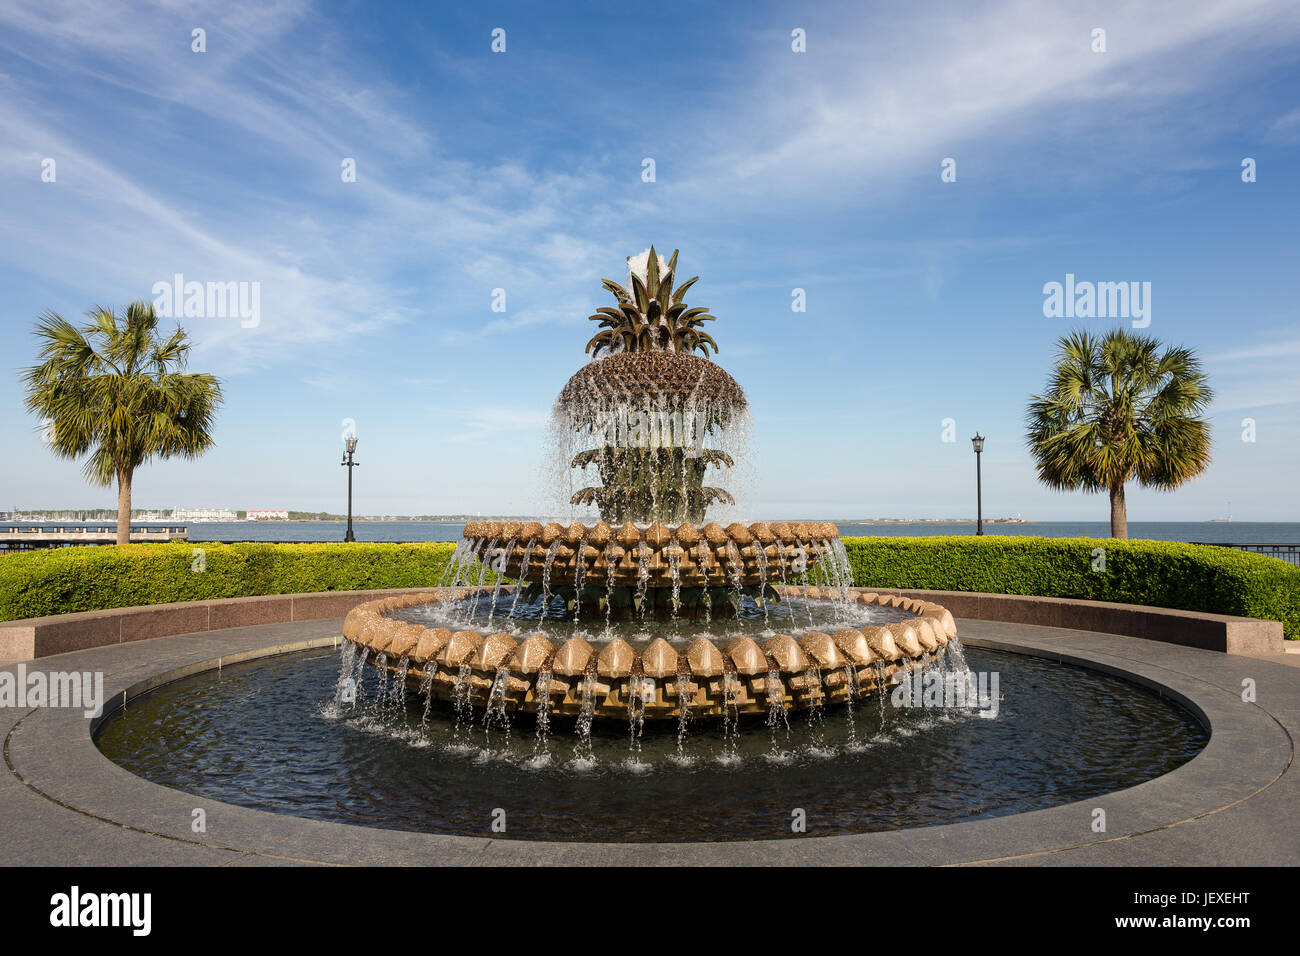 Ananas-Wasser-Brunnen in Waterfront Park in Charleston, SC.  Ananas sind ein Symbol der Gastfreundschaft in den amerikanischen Südstaaten.  Platz im Himmel zu kopieren, wenn Ne Stockfoto